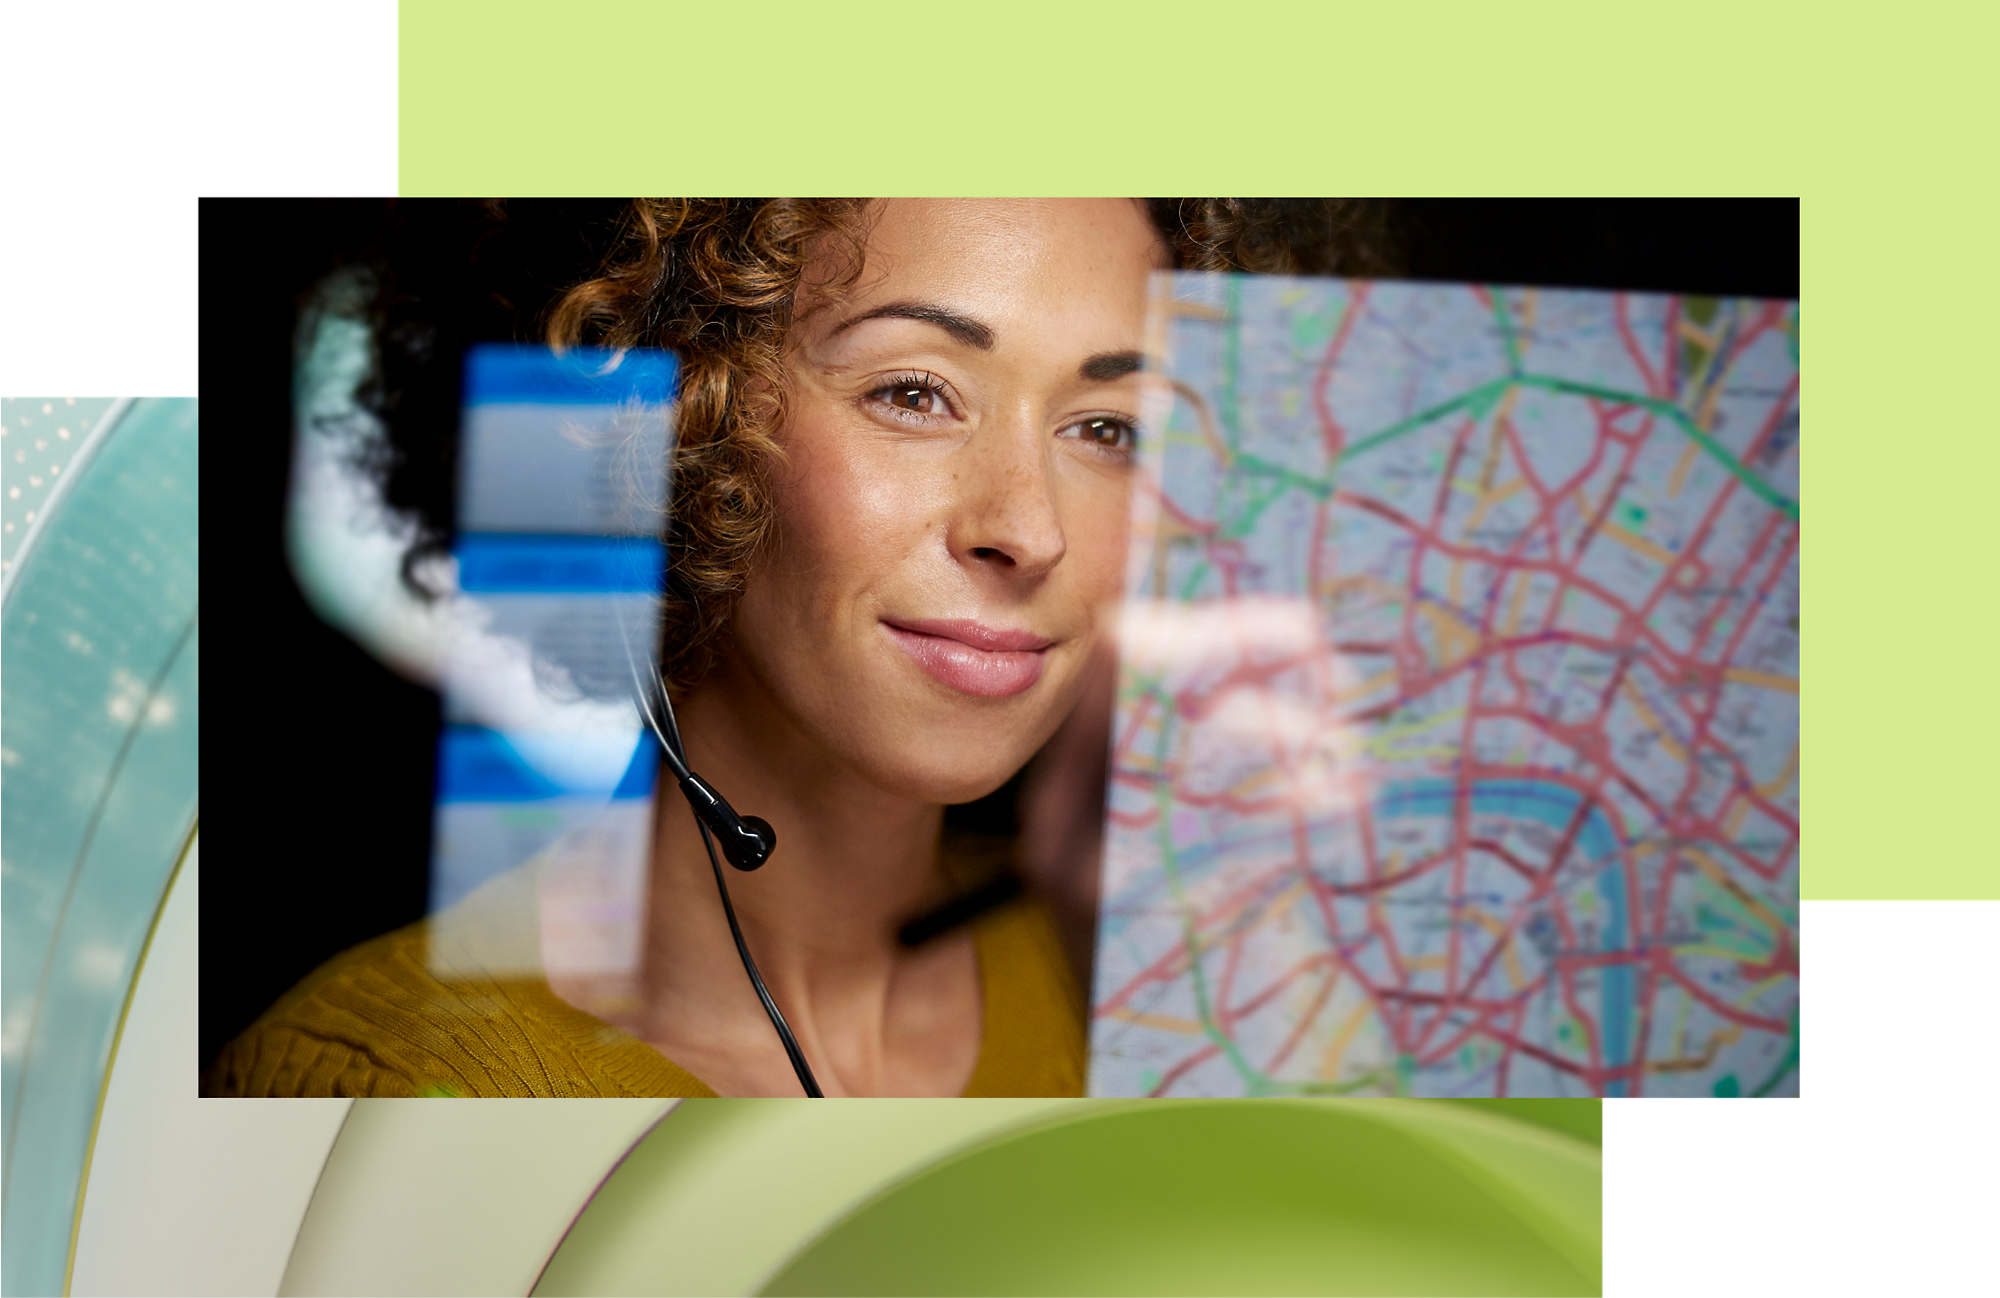 Kundendienstmitarbeiter mit Headset, der lächelnd auf eine Karte auf einem digitalen Bildschirm schaut